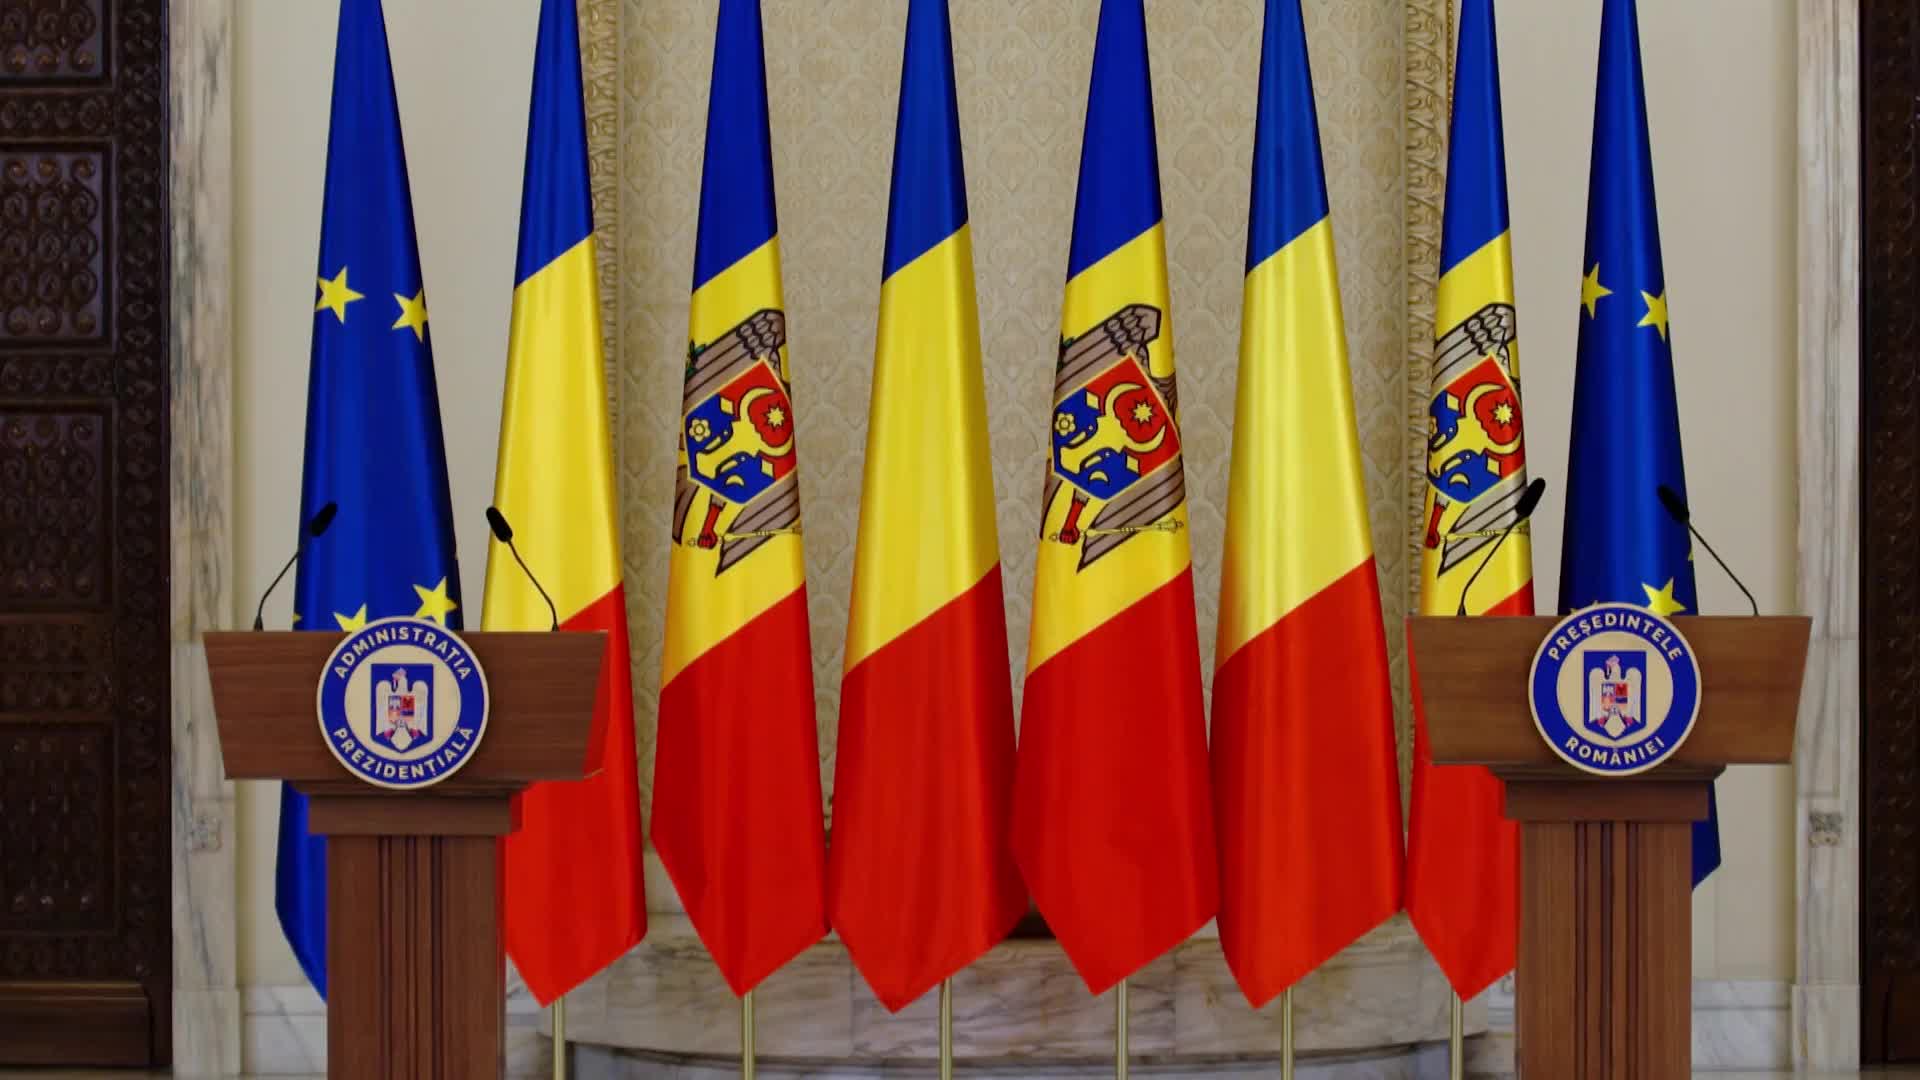 Conferință de presă susținută de Președintele României, Klaus Iohannis, și Președintele Republicii Moldova, Maia Sandu